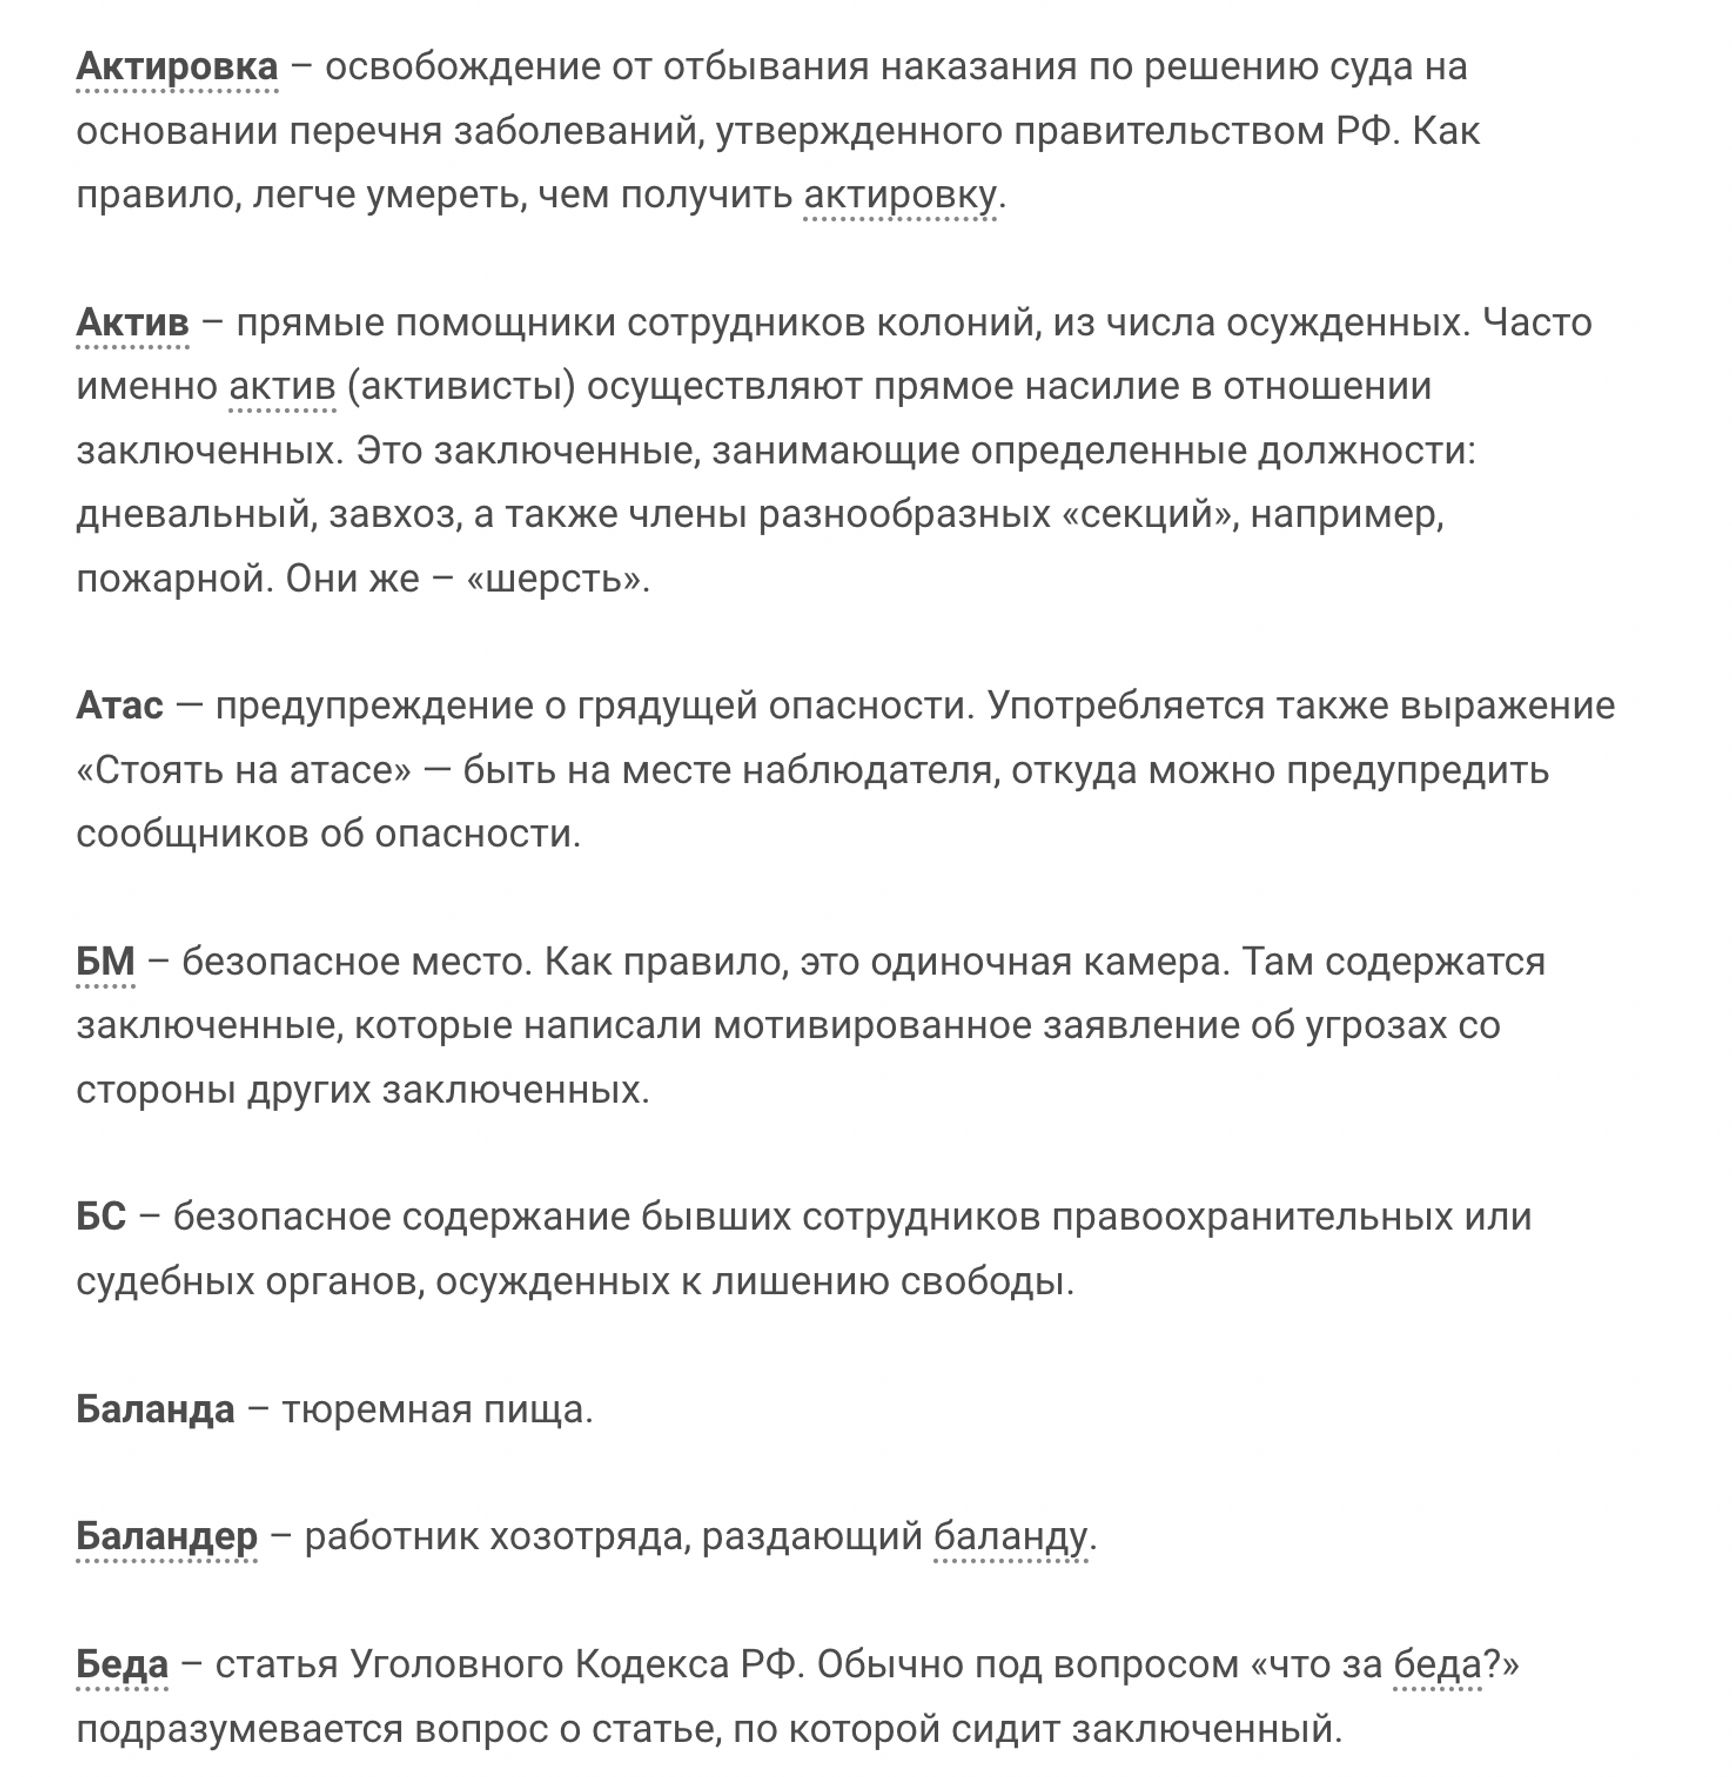 В России заблокировали словарь тюремных терминов проекта «Русь сидящая»